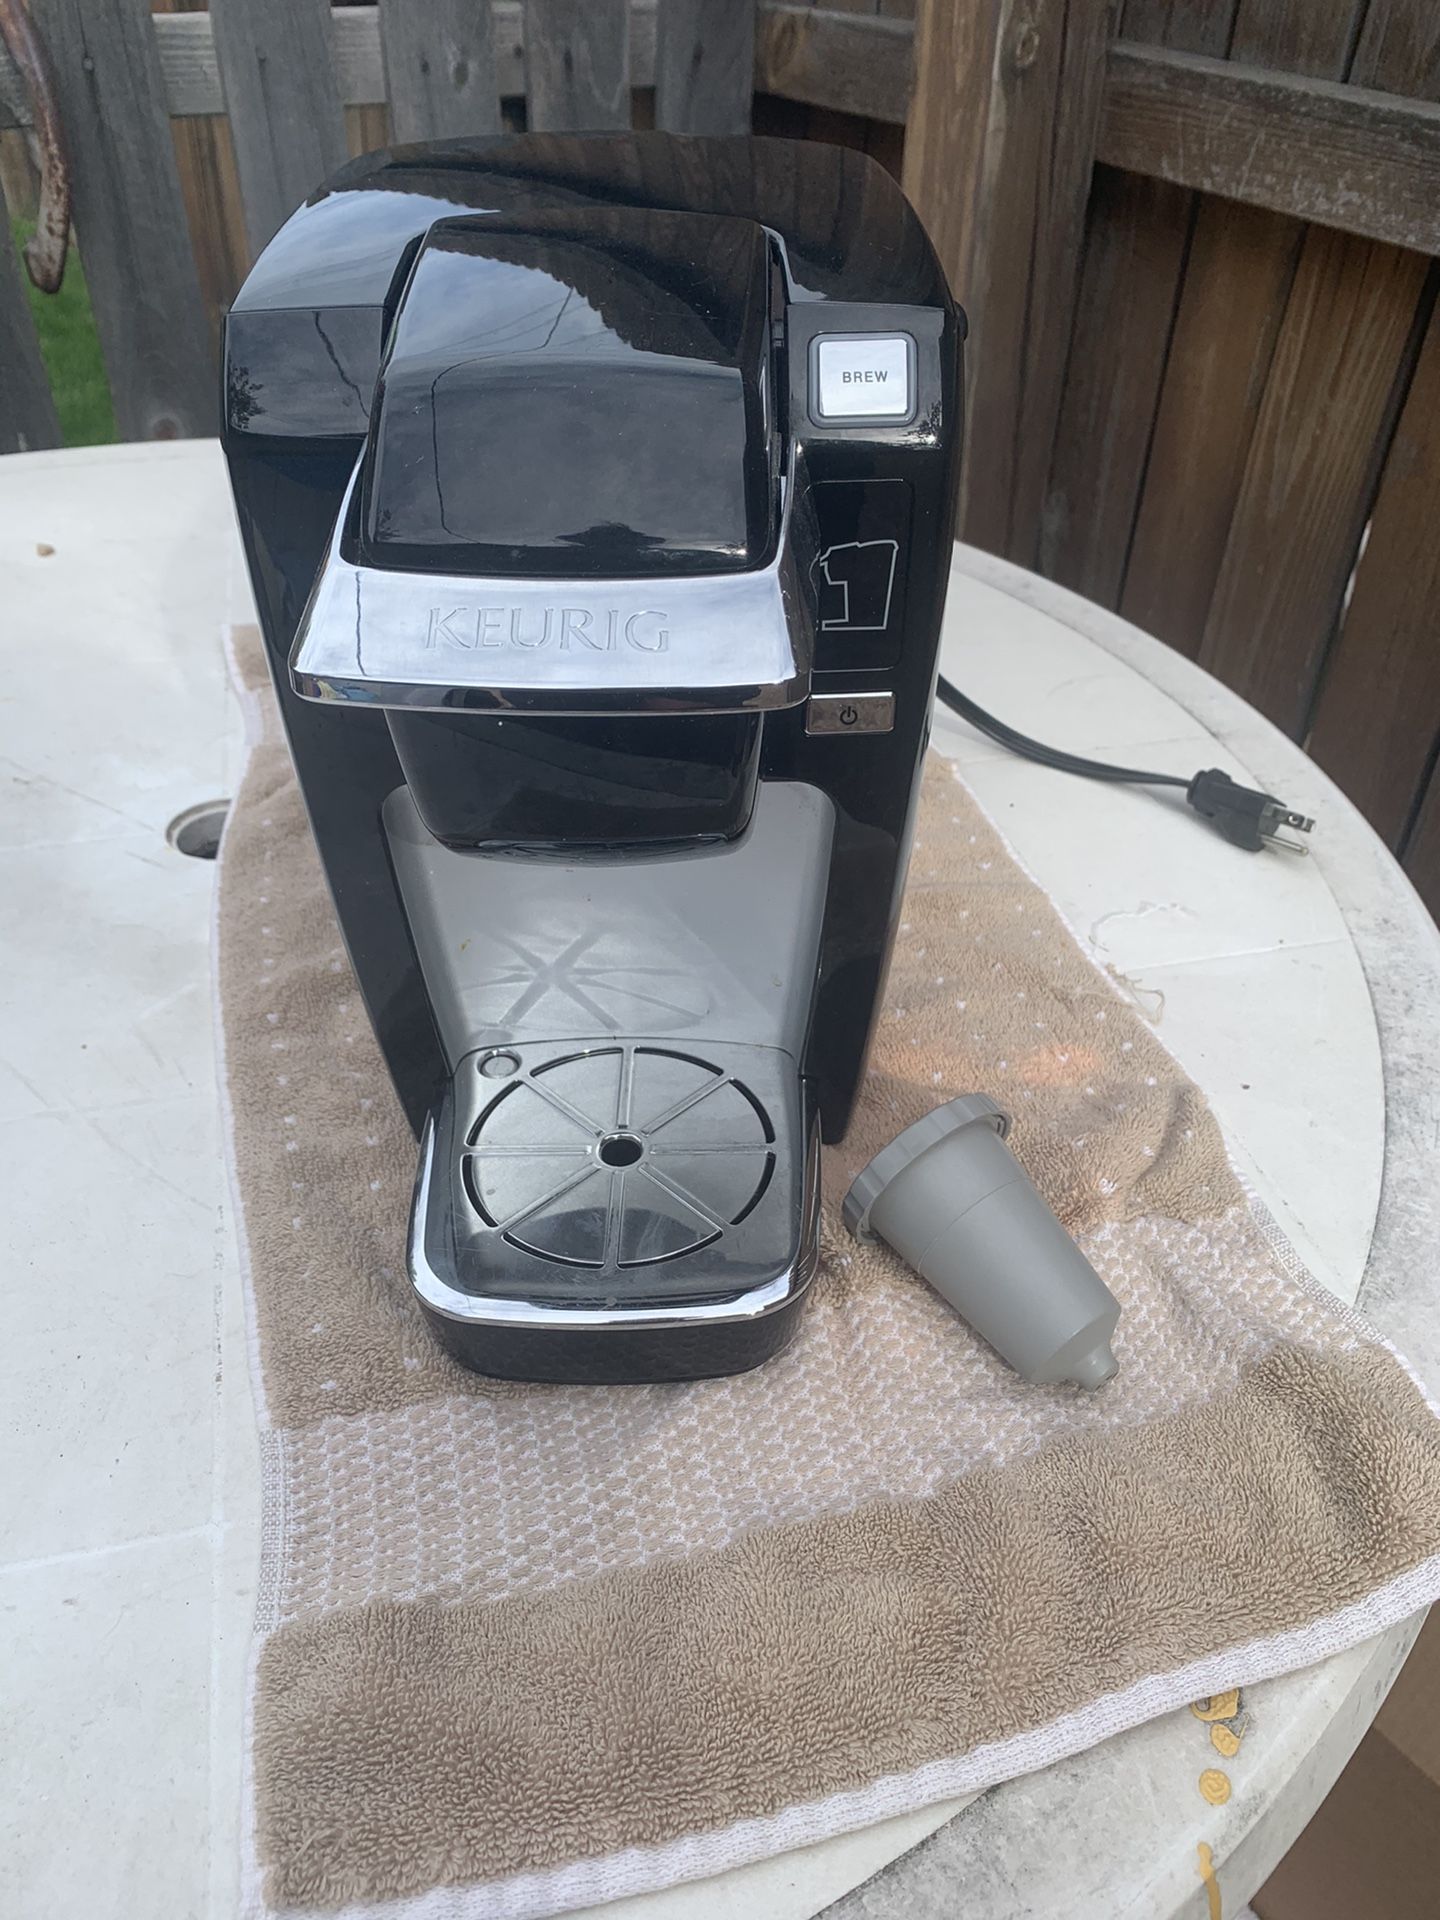 Keurig Coffe Machine